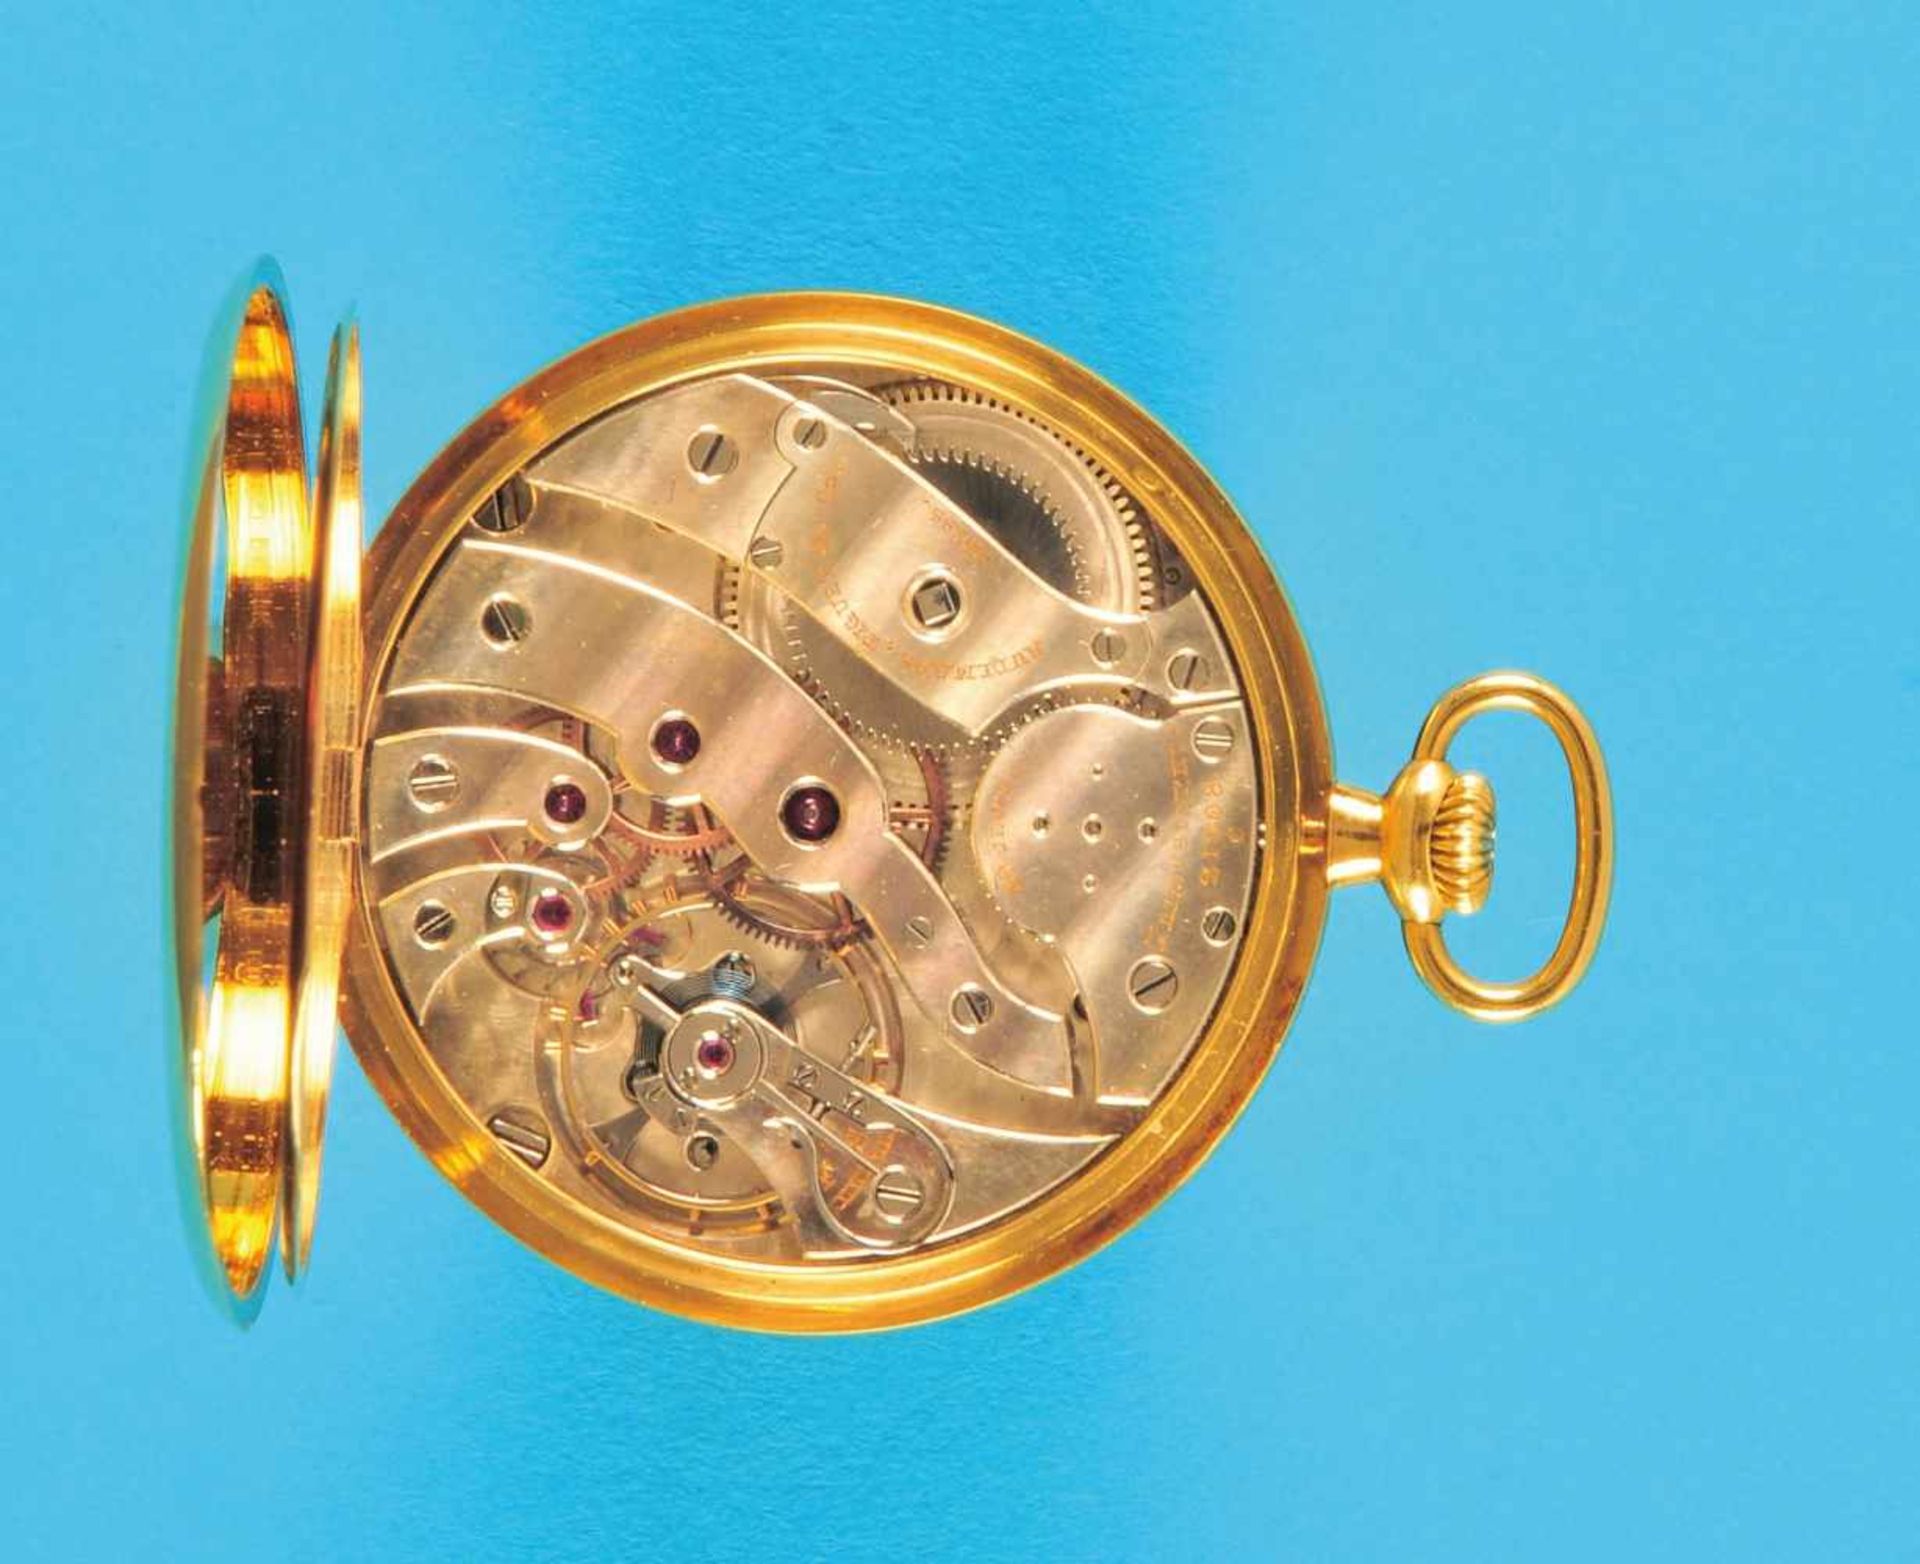 Golden tailcoat watch, Audemars Piquet & Co. Goldene Frackuhr, Audemars Piquet & Co., glattes 18-